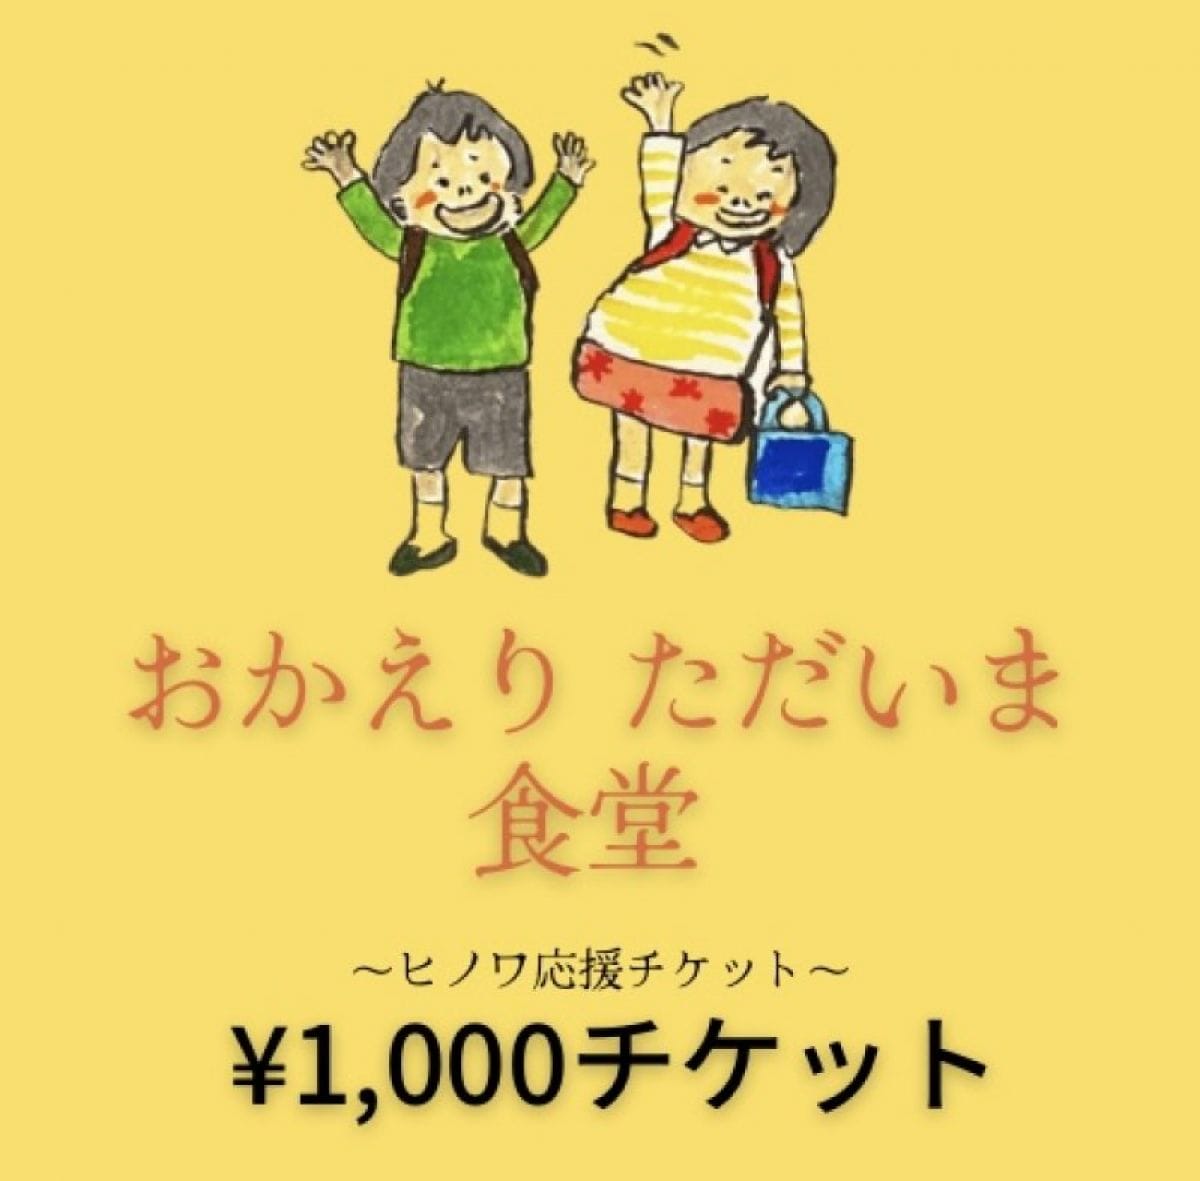 1000円‼︎応援チケット『ヒノワkitchen&space』